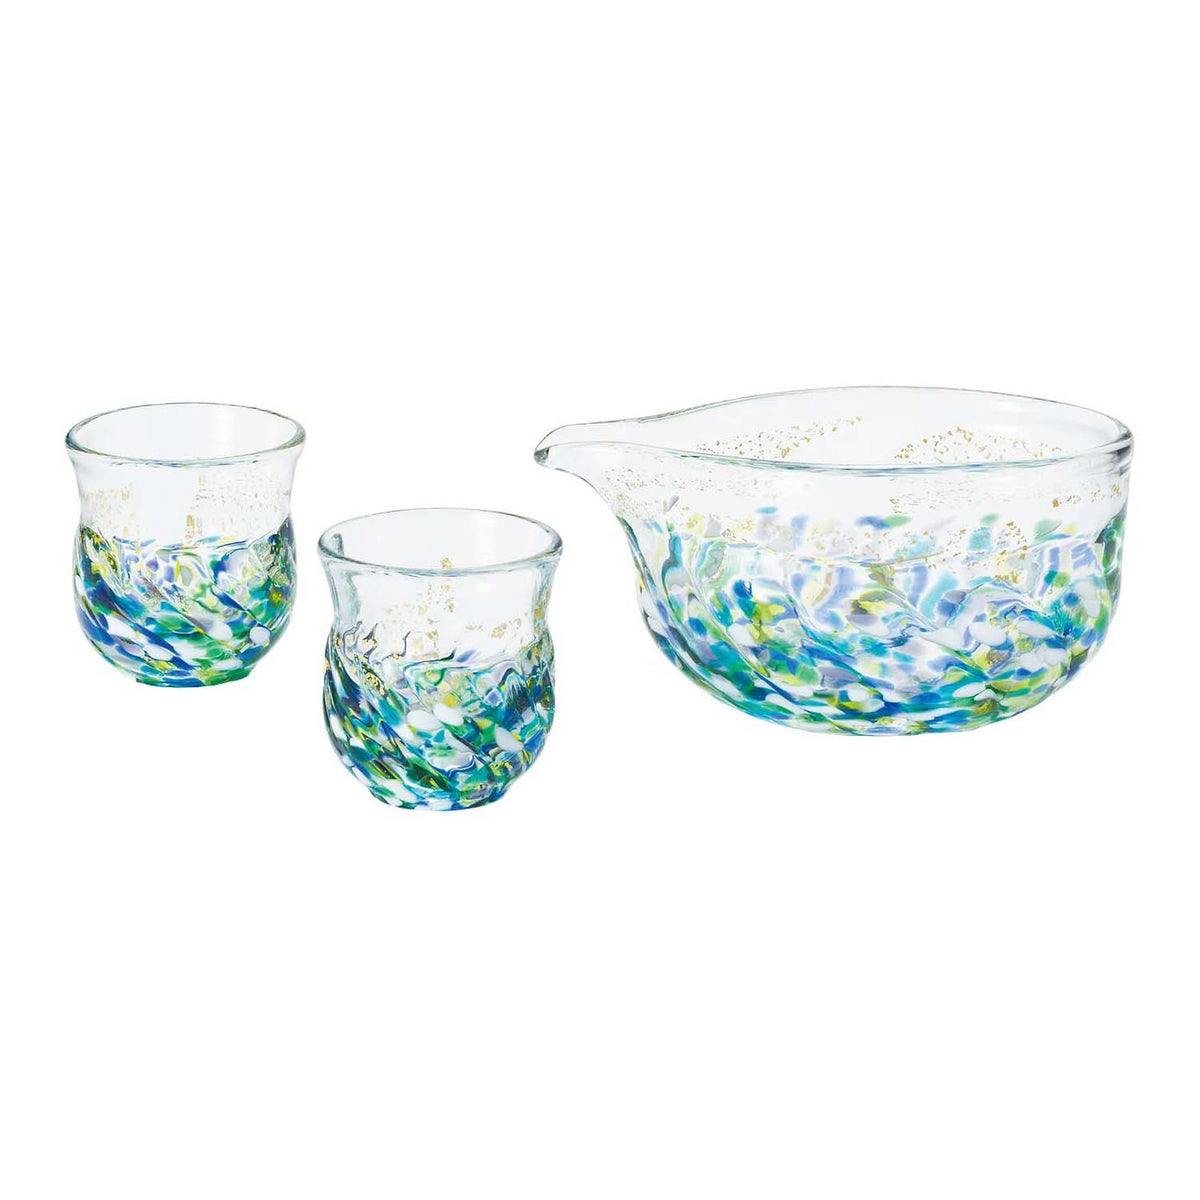 ADERIA Tsugaru Vidro Soda-Lime Glass Flower Paint Sakeware Set